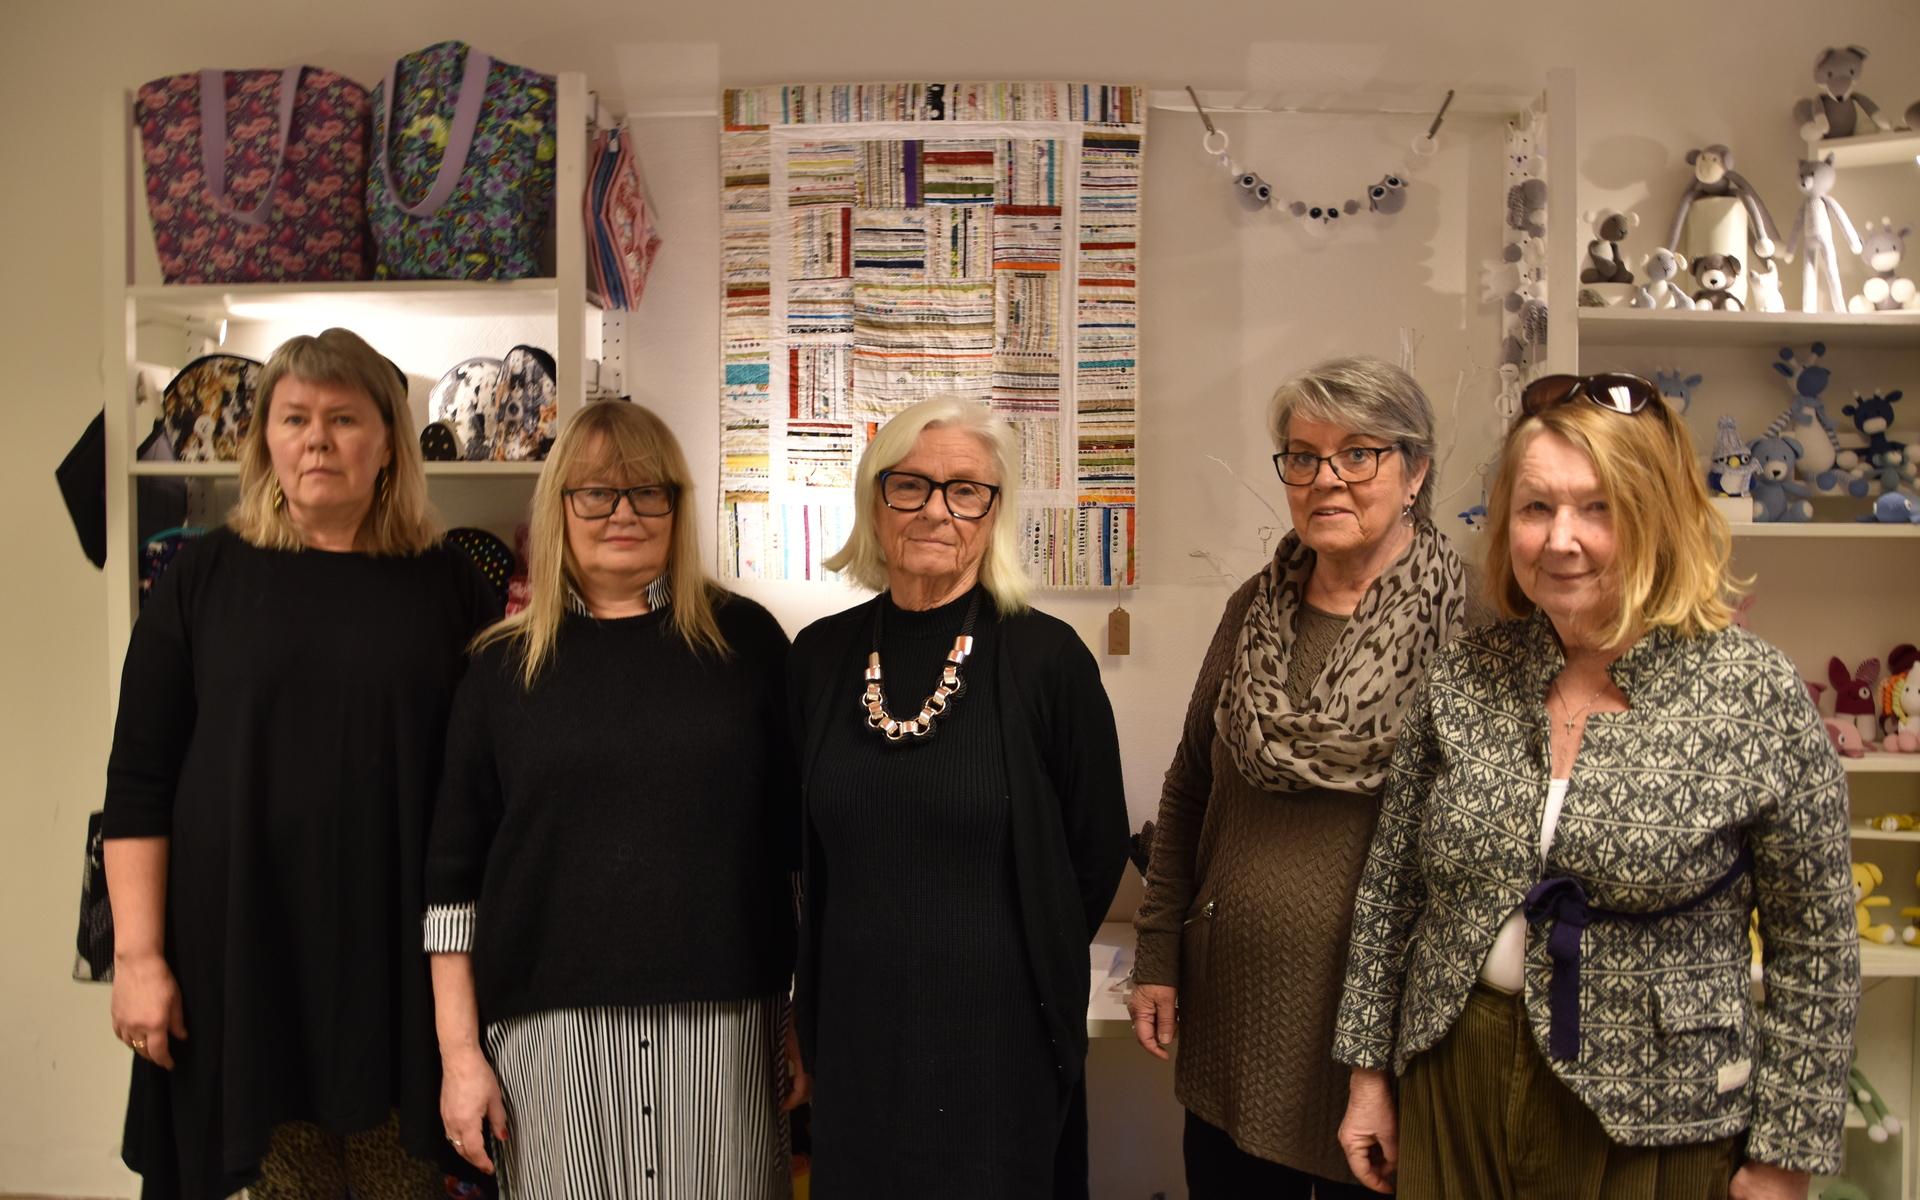 Konsthantverkarna från vänster: Lena Haglund, Yvonne Sallén, Eva Johansson, Margareta Kranshammar och Monika Hermanson